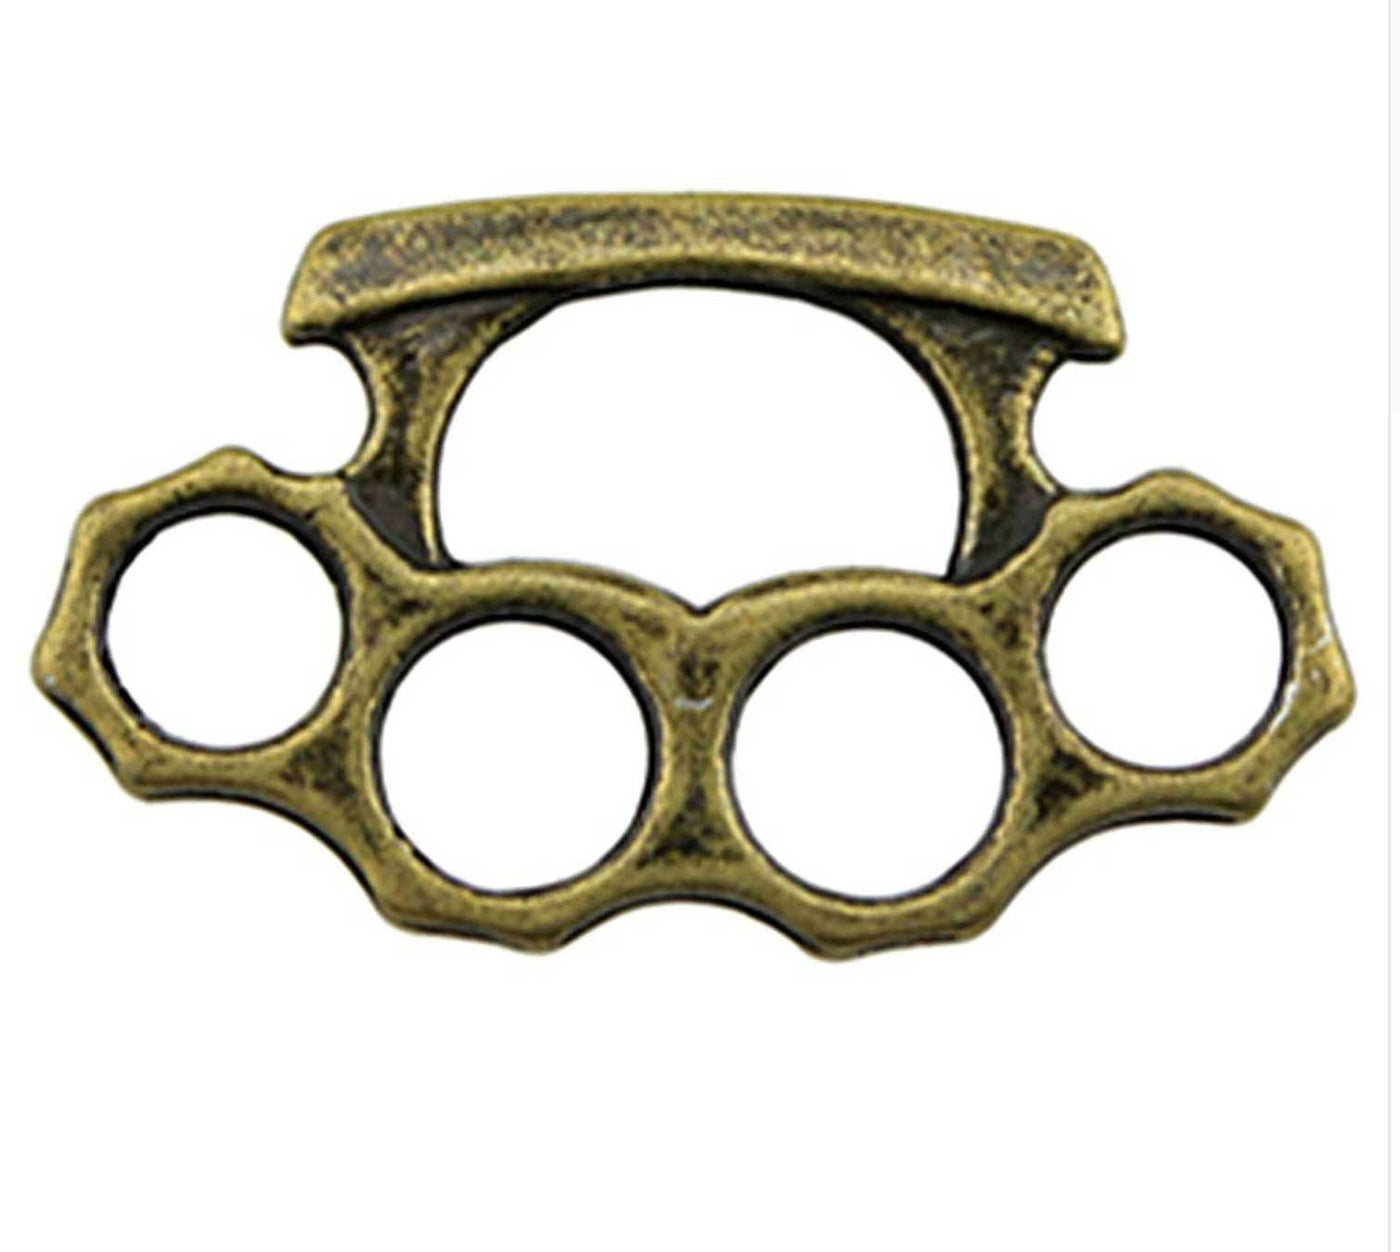 Miniature Brass Knuckle Pendants